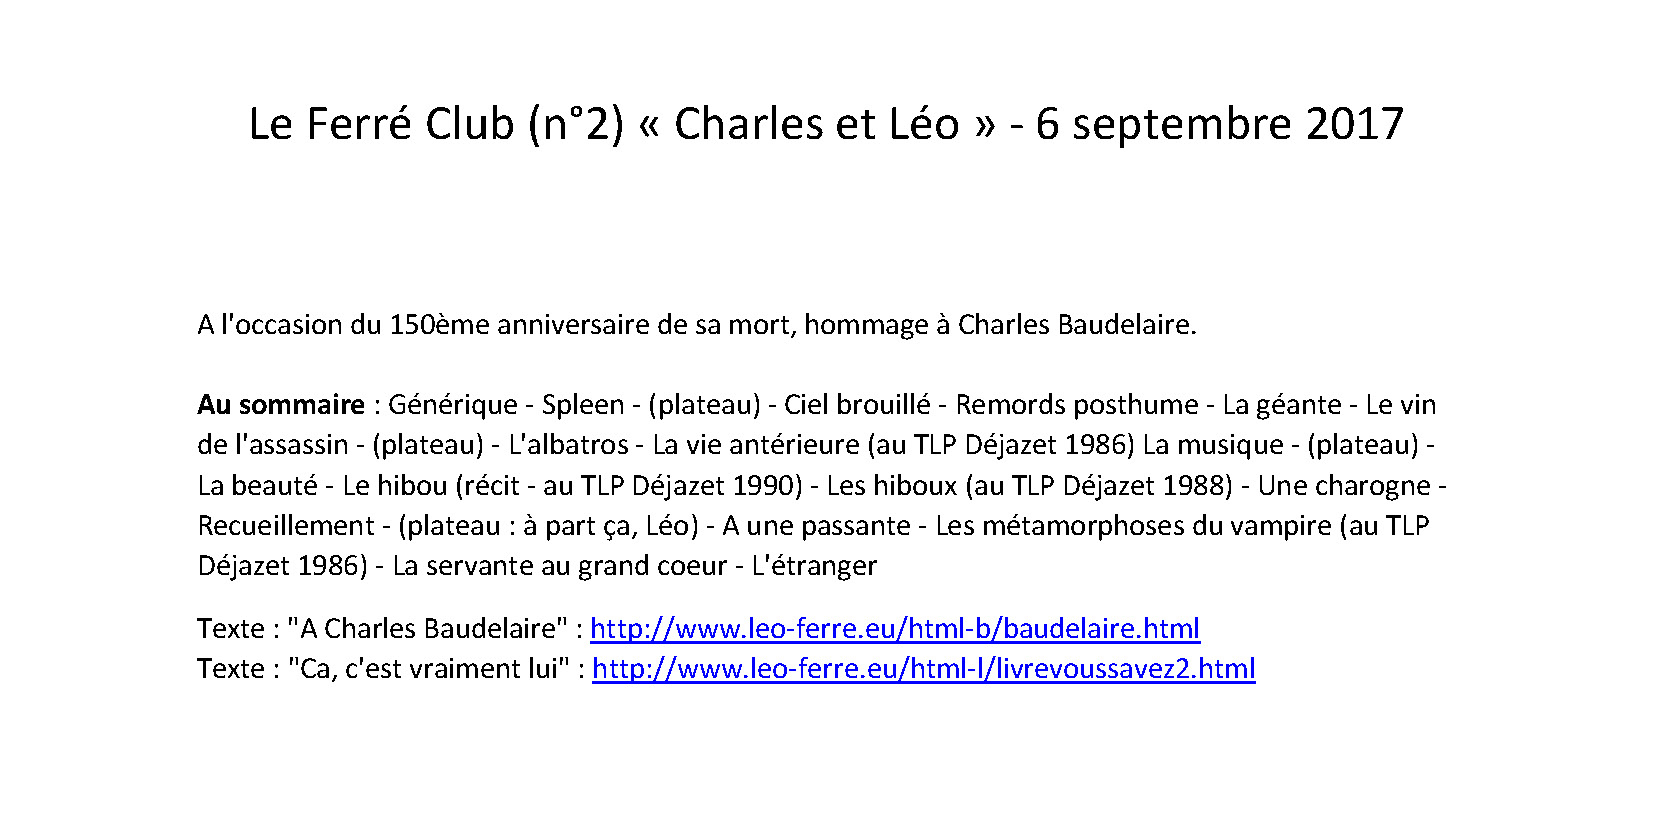 30/08/2017 Bienvenue dans Le-Ferré Club